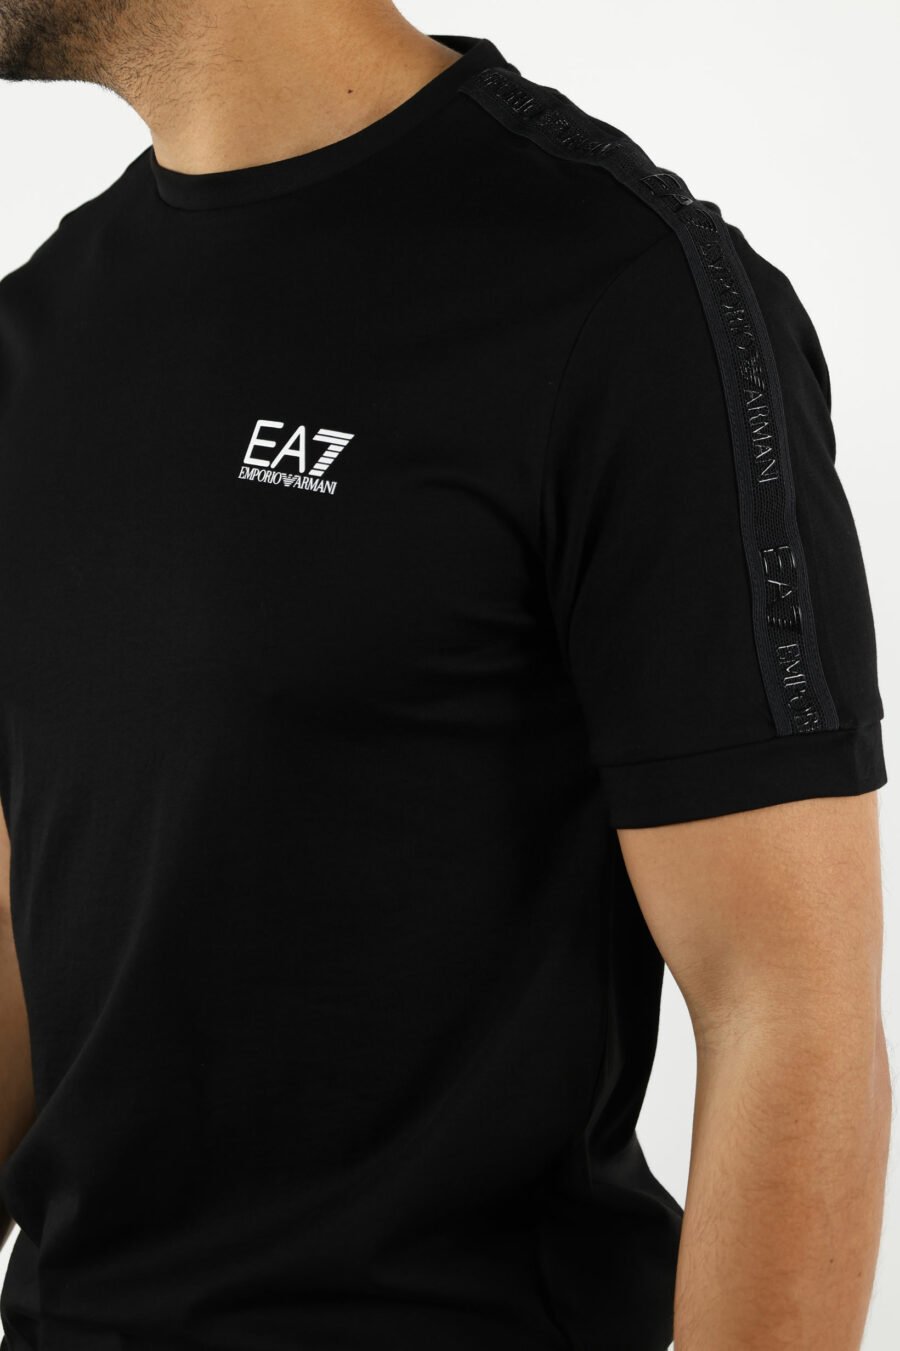 T-shirt preta com mini-logotipo "lux identity" preto - 110960